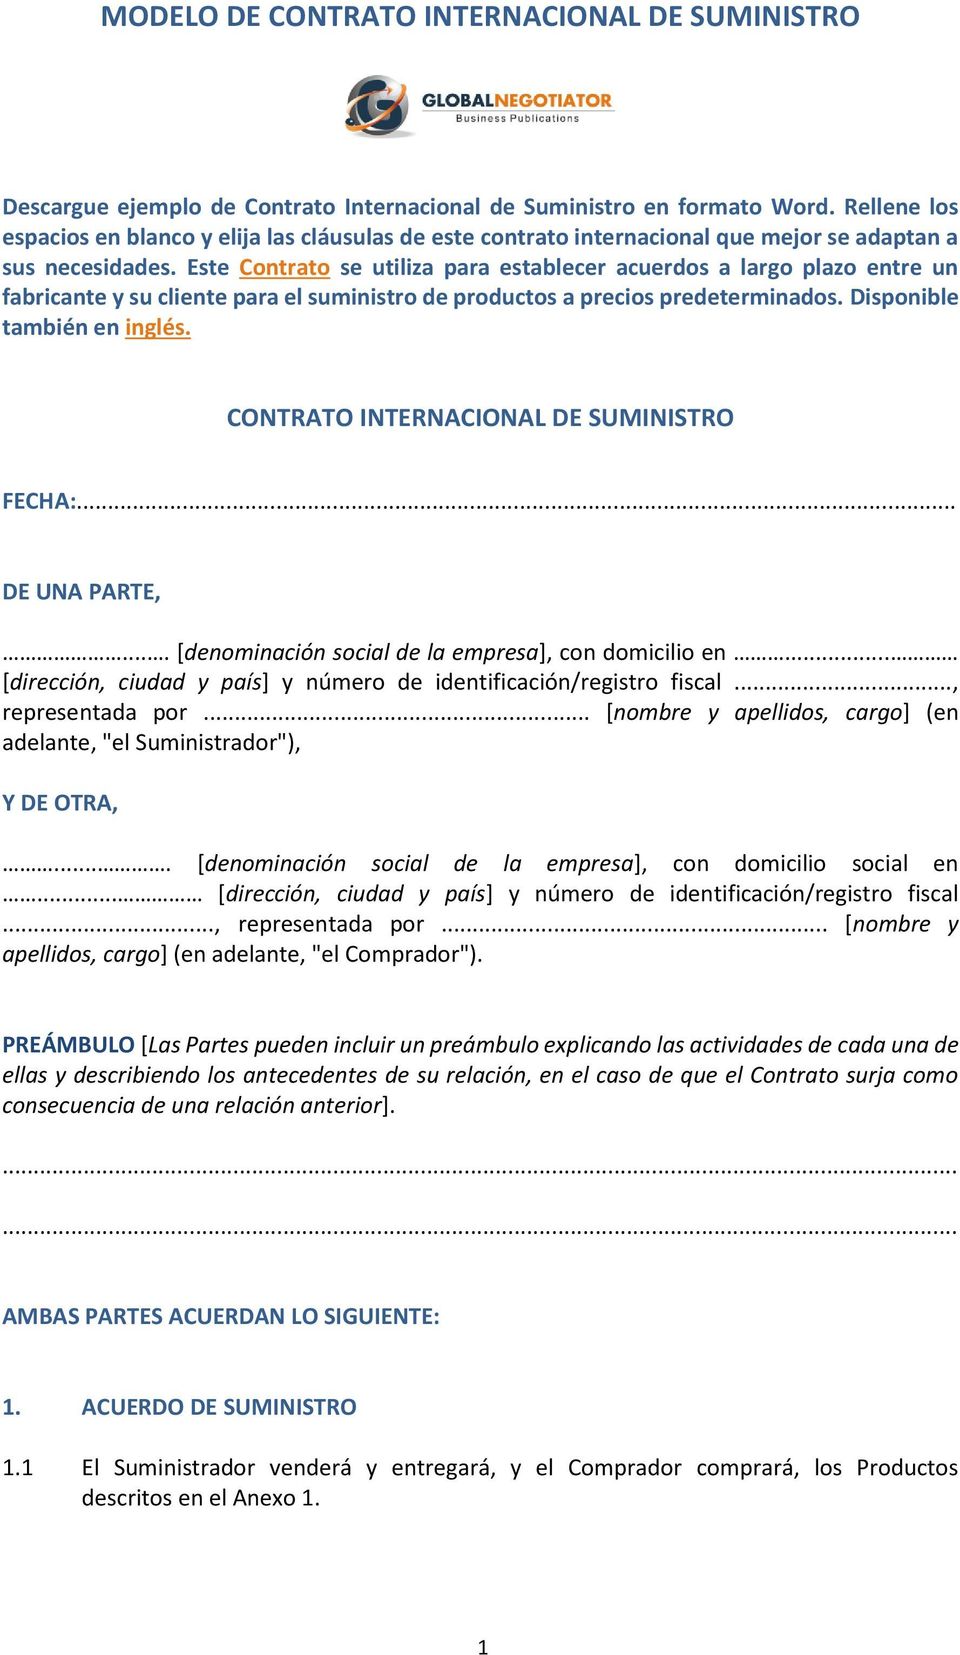 MODELO DE CONTRATO INTERNACIONAL DE SUMINISTRO - PDF Descargar libre